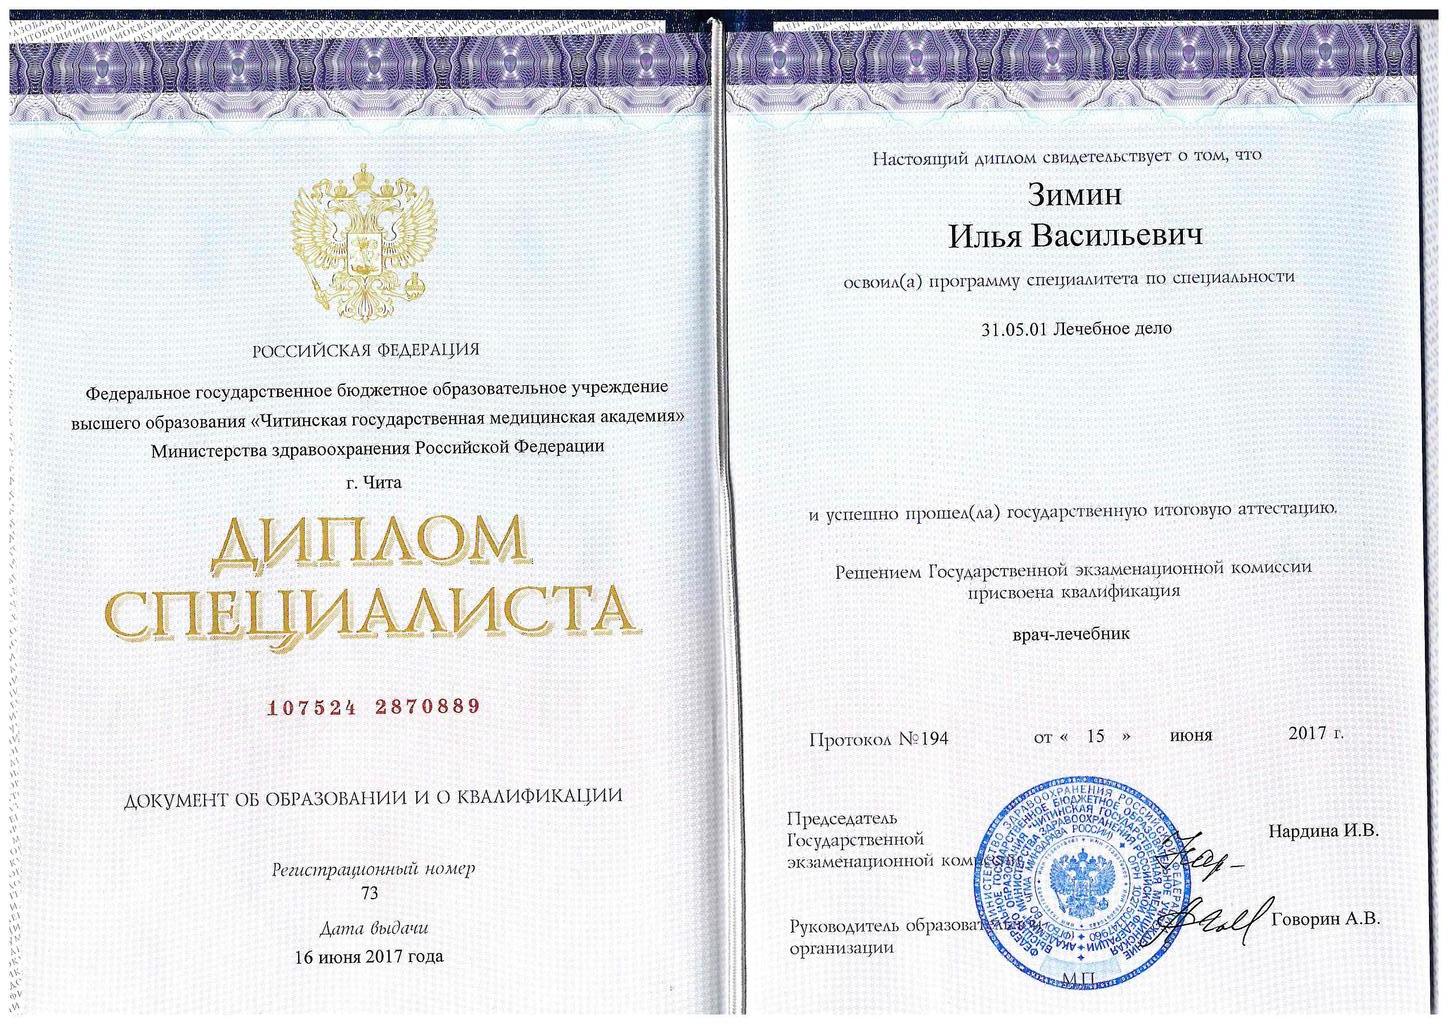 Документ подтверждающий что Илья Васильевич Зимин получил(а) диплом профильного образования по специальности лечебное дело